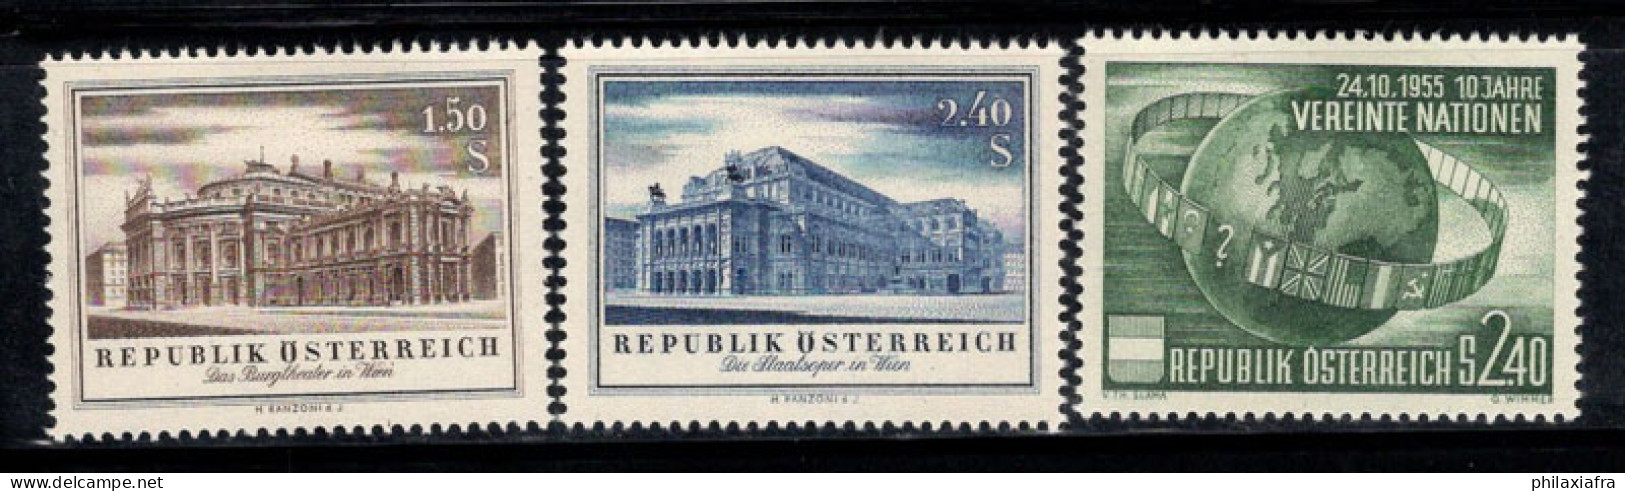 Autriche 1955 Mi. 1020-1022 Neuf * MH 100% ONU, THÉÂTRE, Opéra - Ongebruikt